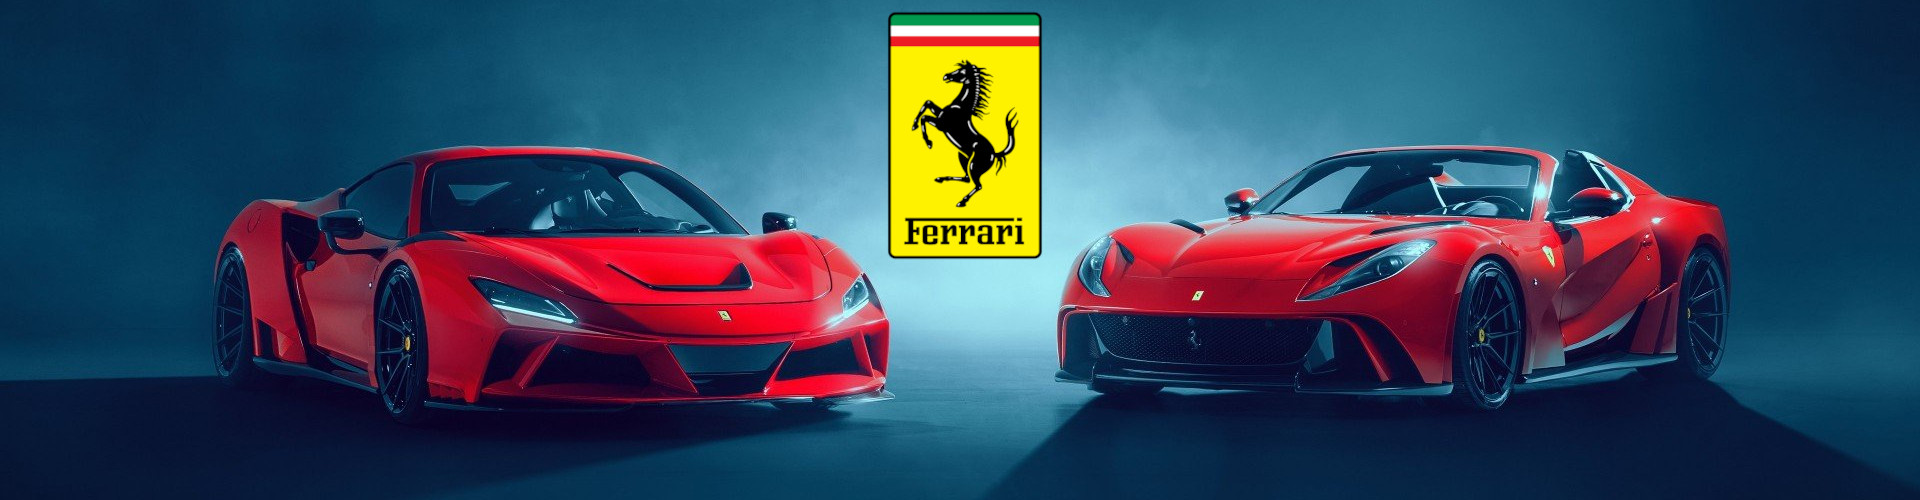 Slide Image Ferrari